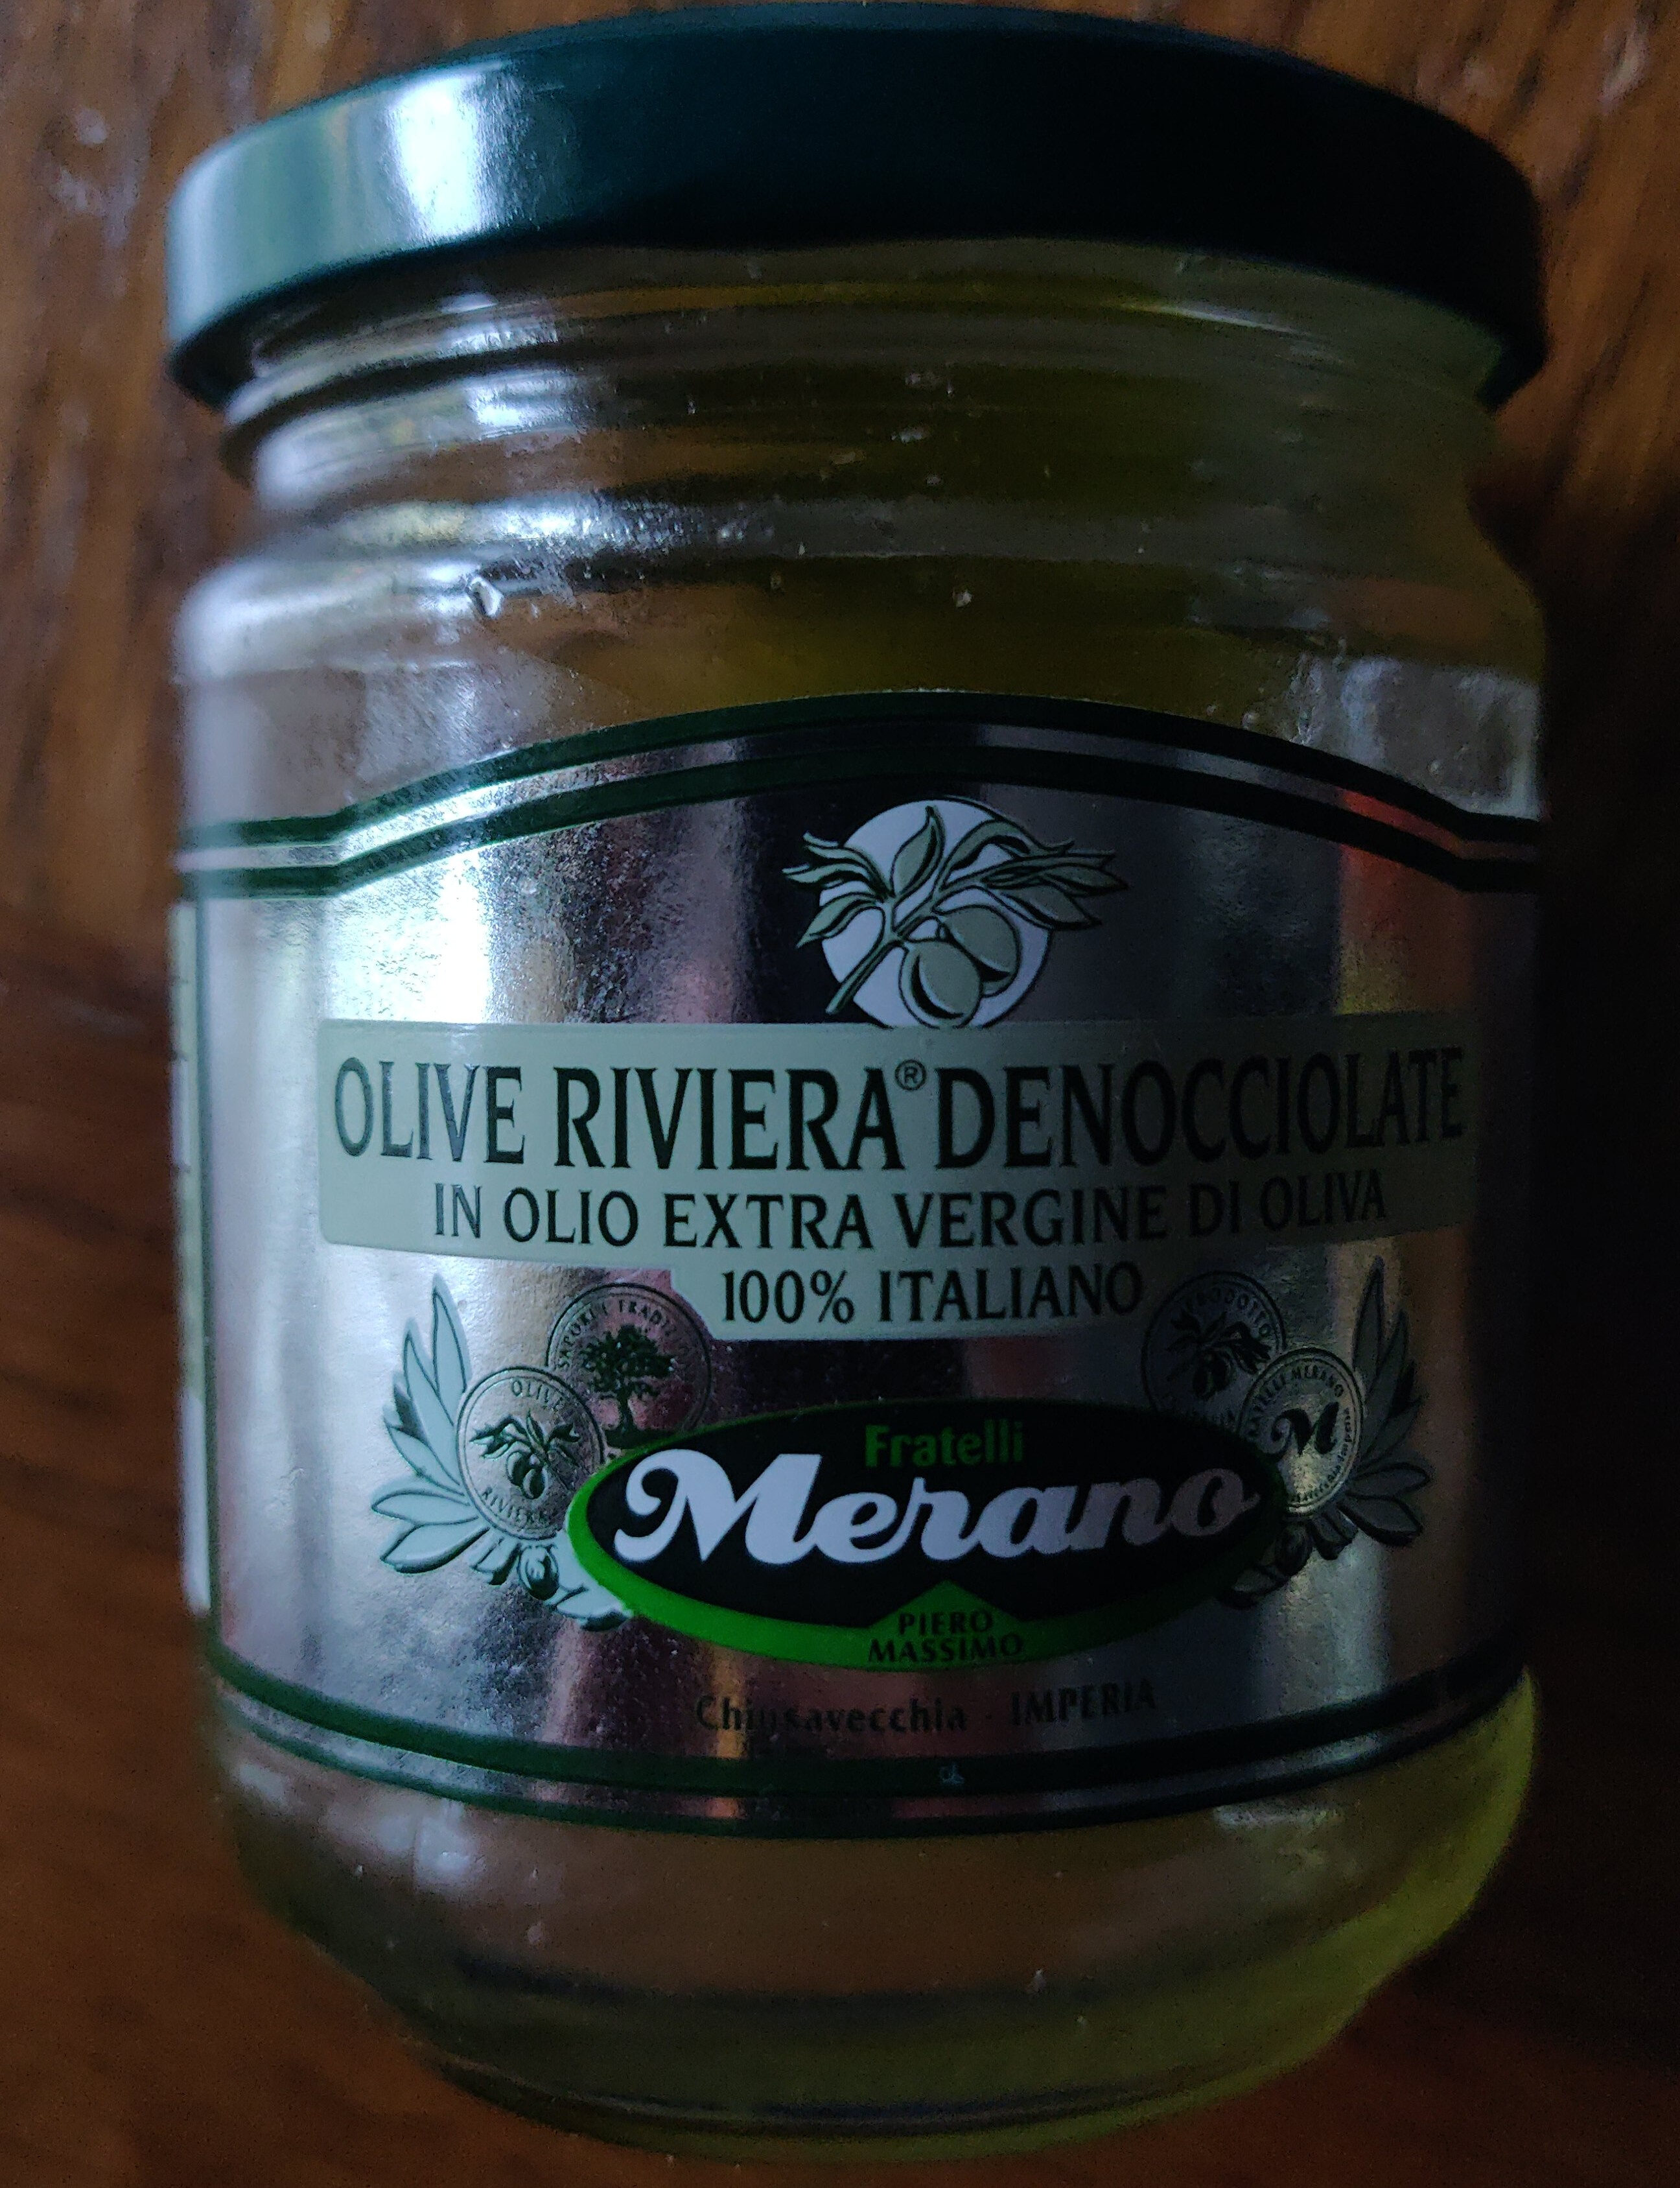 Olive riviera denocciolate - Producte - it